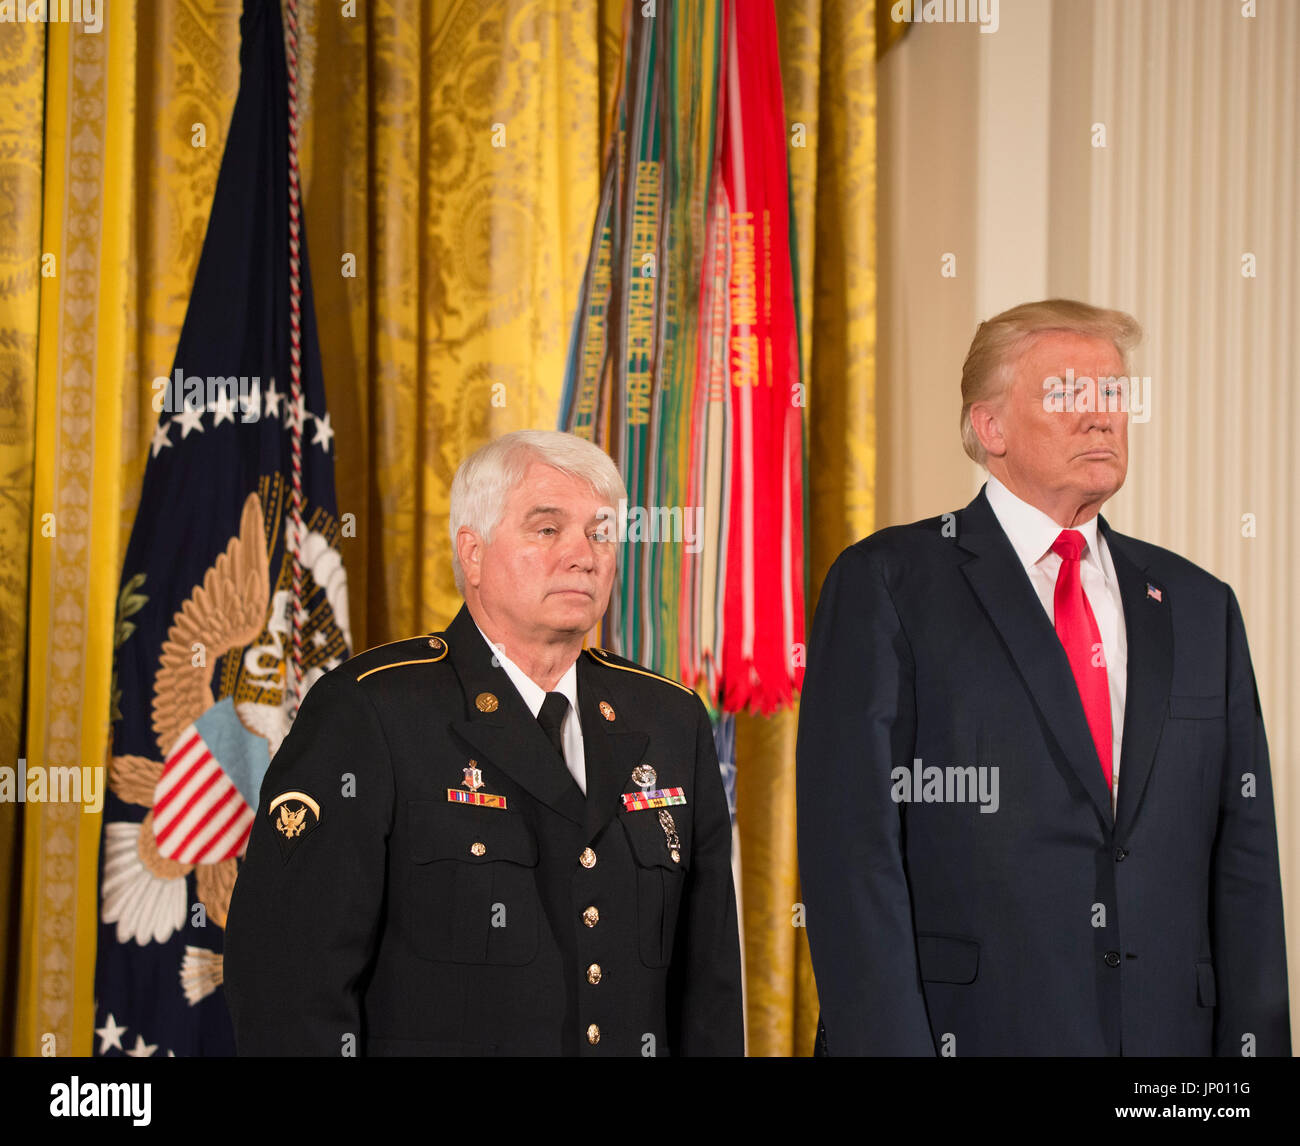 Washington DC, 31 juillet 2017, USA : Le président Donald J. Trump awards la première médaille de médaille d'honneur à sa présidence à l'infirmier de l'armée ex-McCoughan James pour son service durant la guerre du Viet Nam, lors d'une cérémonie à la Maison Blanche à Washington DC. Patsy Lynch/MediaPunch Banque D'Images